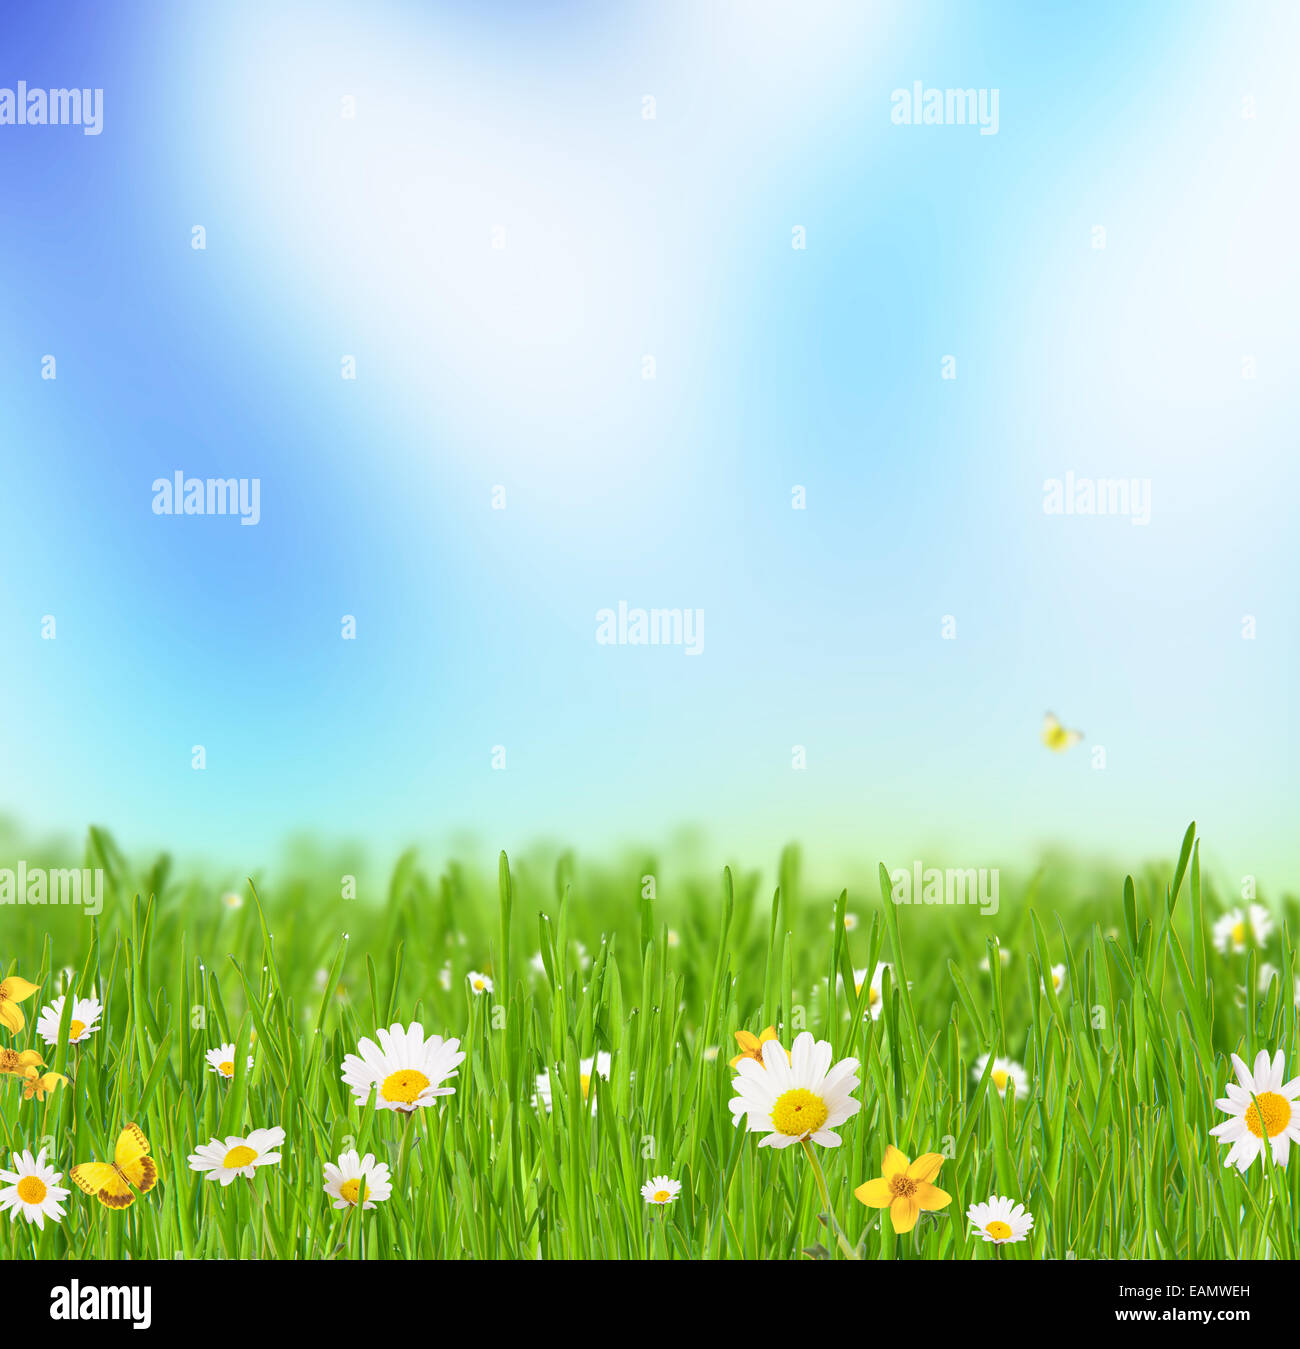 Abstrakte Blumen Hintergrund mit Trauben des Grases mit blühenden Kamillen. Blauen Himmel im Hintergrund mit freiem Speicherplatz für text Stockfoto